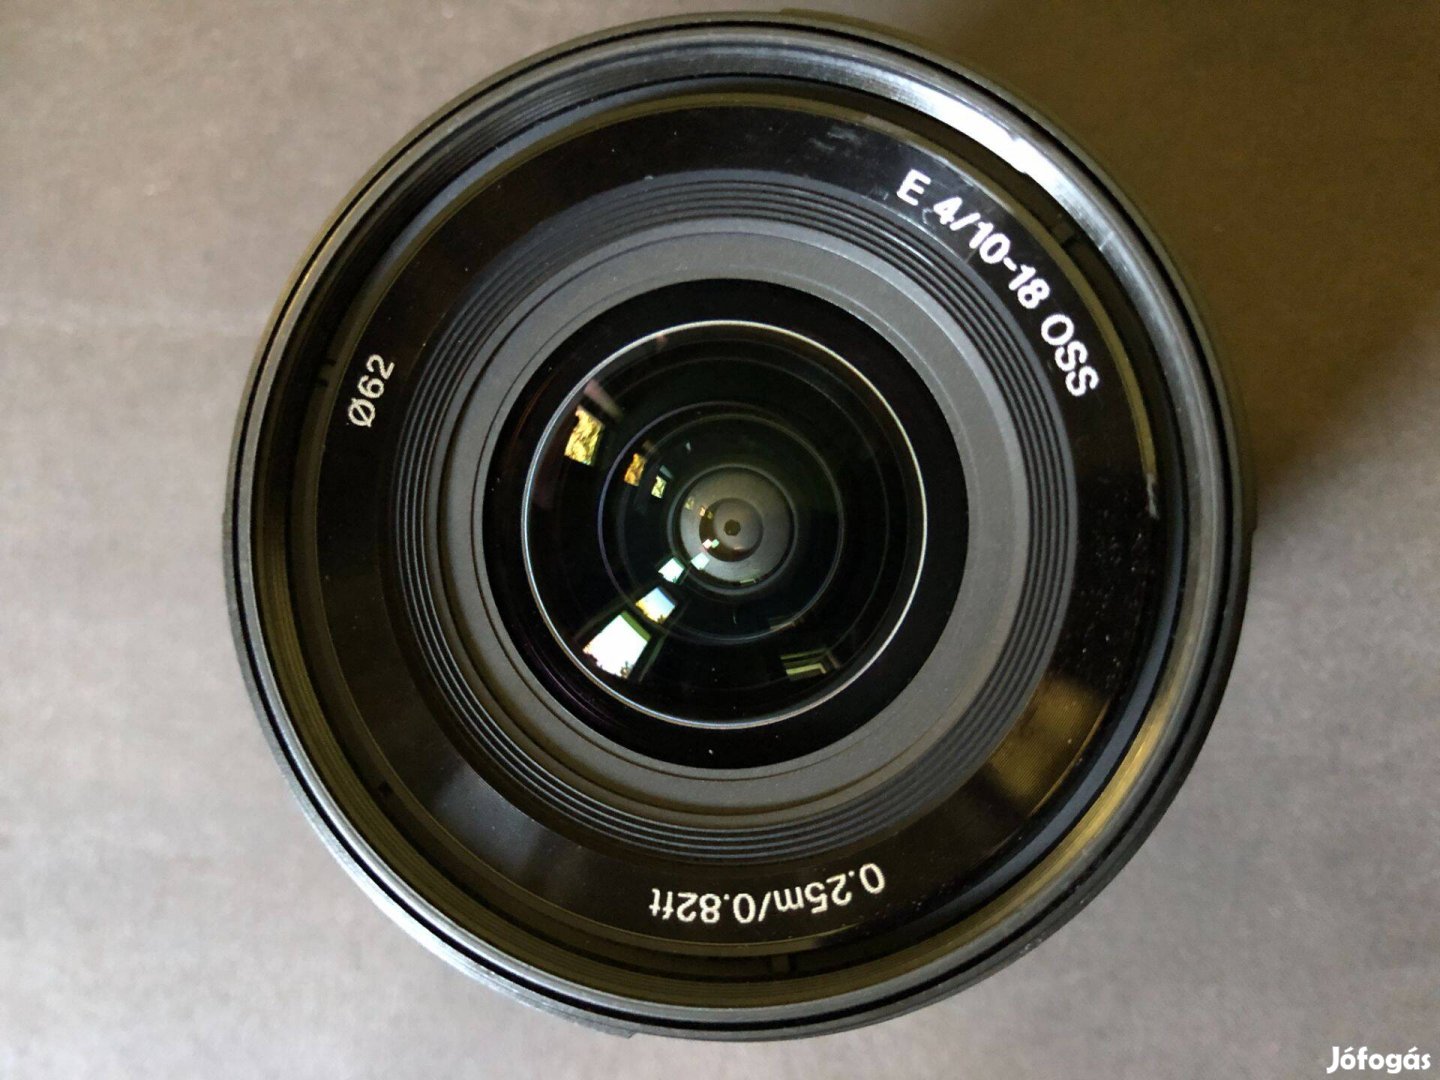 Sony E 10-18mm f/4 OSS objektív